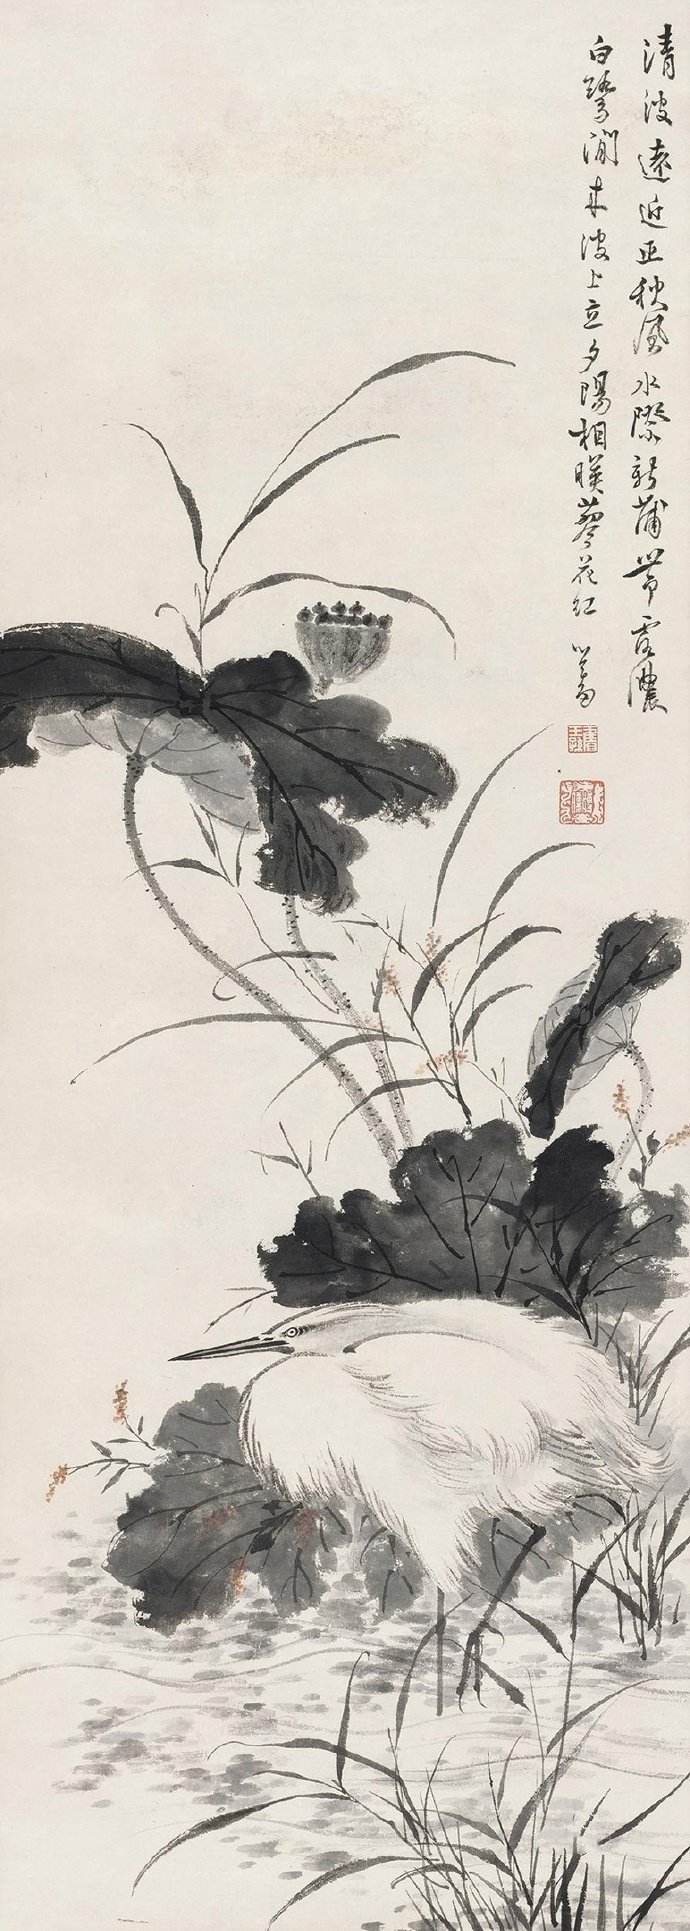 中国最后一位文人画大师——"旧王孙"溥心畲及其花鸟作品欣赏